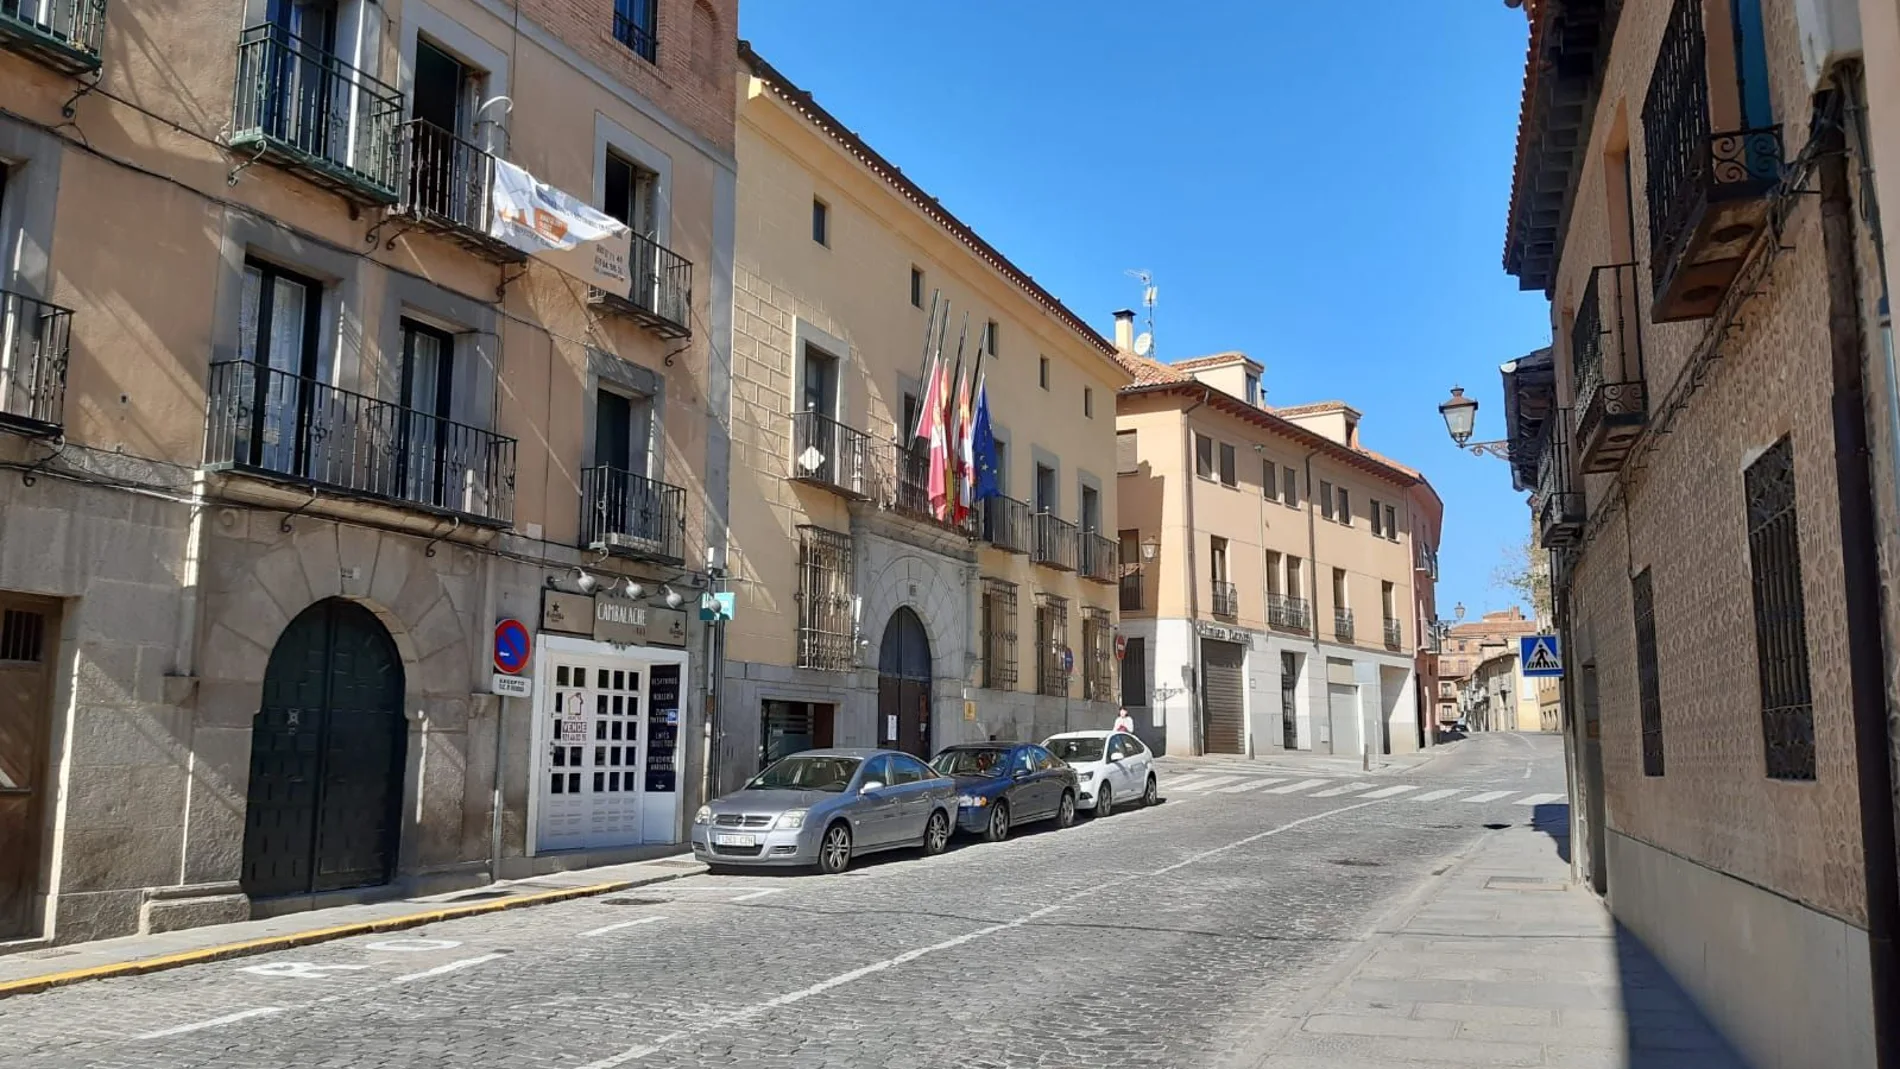 La Diputación de Segovia retrasa el cobro de tributos a los vecinos de la provincia, pero asegura el pago a los ayuntamientos anticipando un primer pago de 9,8 millones de euros